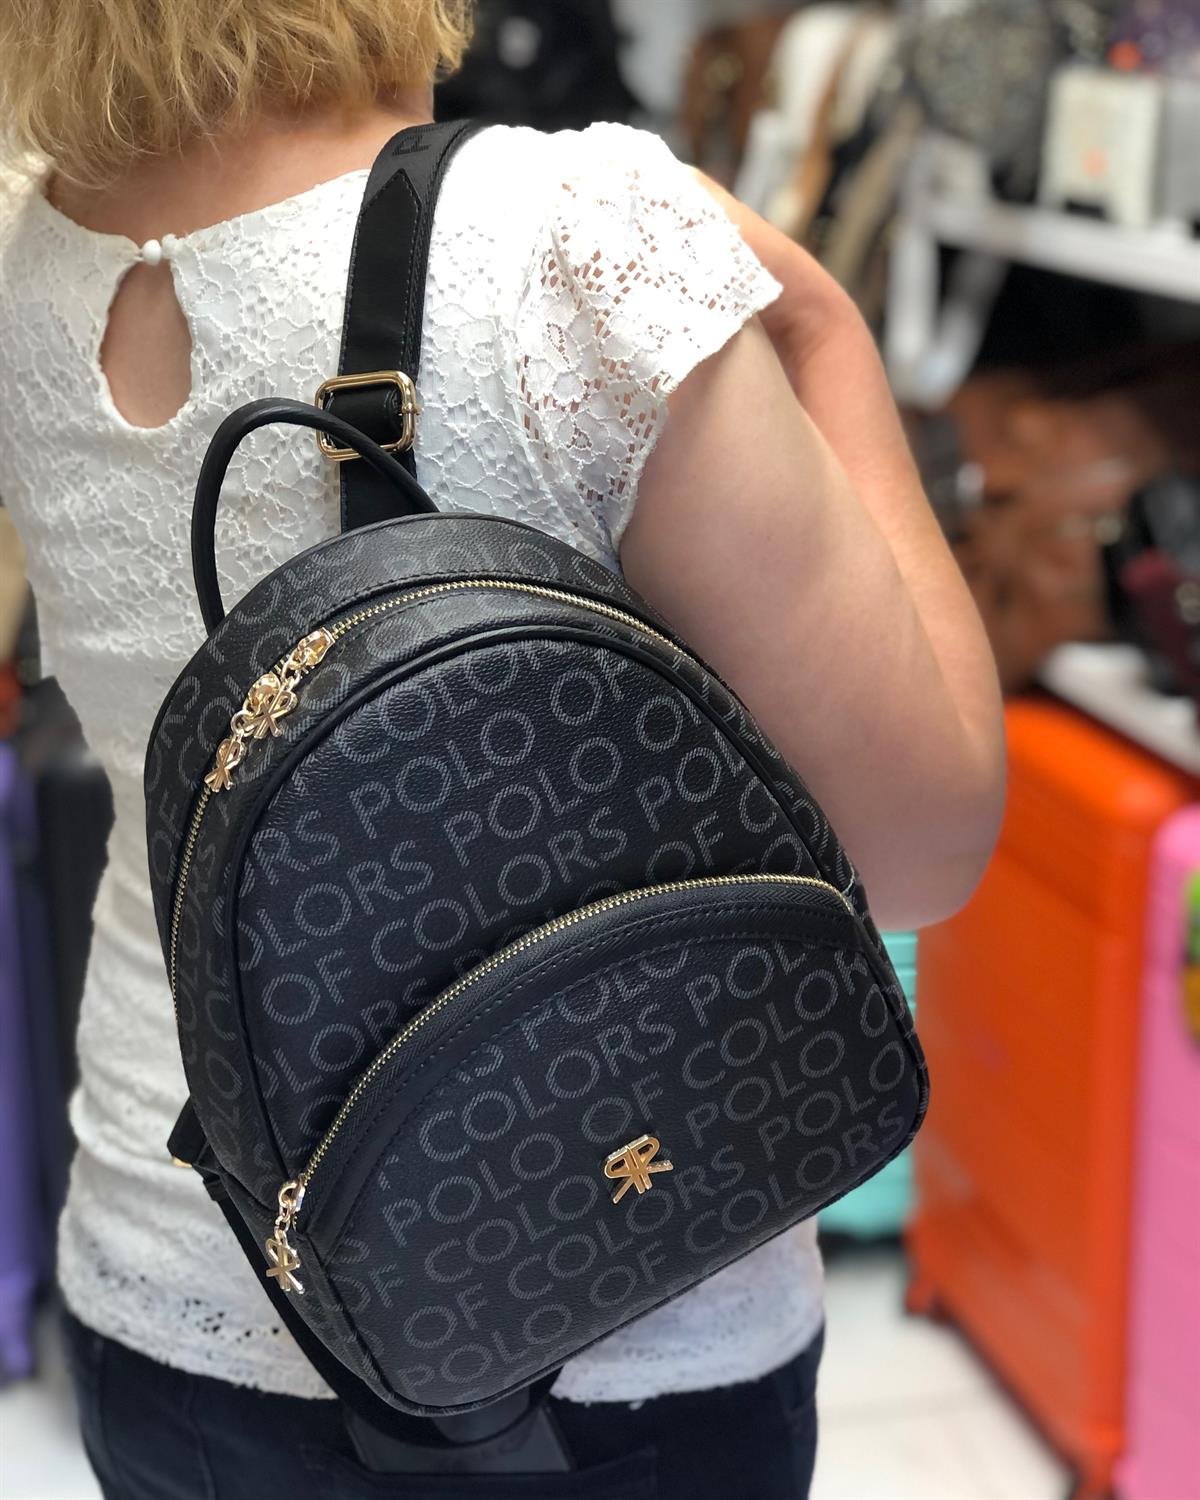 İm Polo Kadın sırt çantası küçük boy çanta ebat 27cm20 |elizabell.com.tr